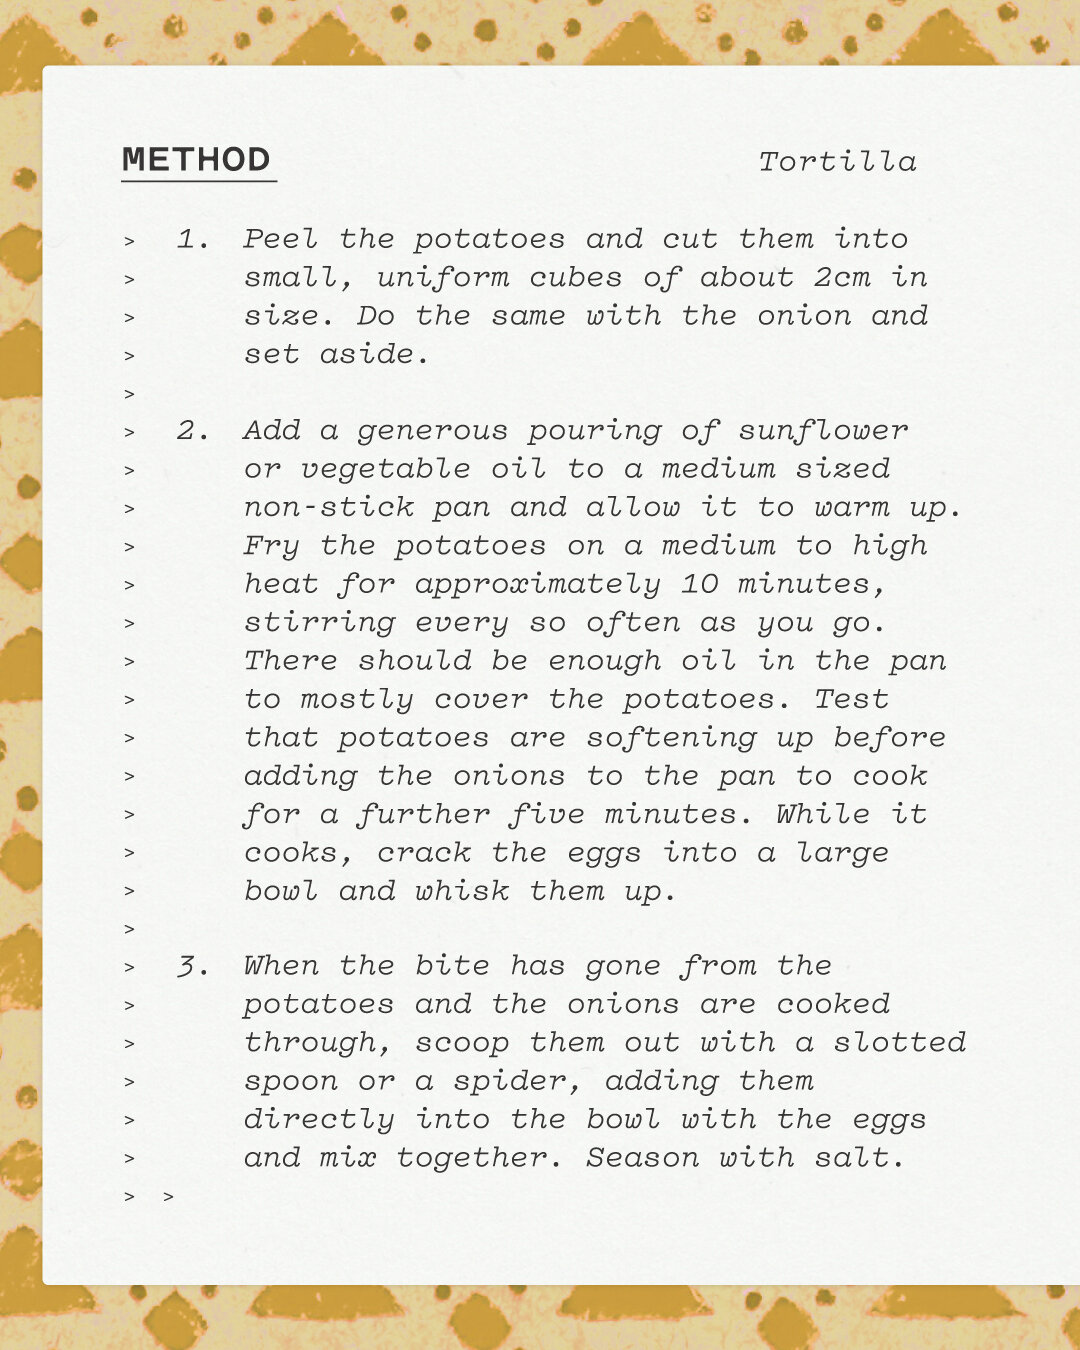 Tortilla_Method_001.jpg